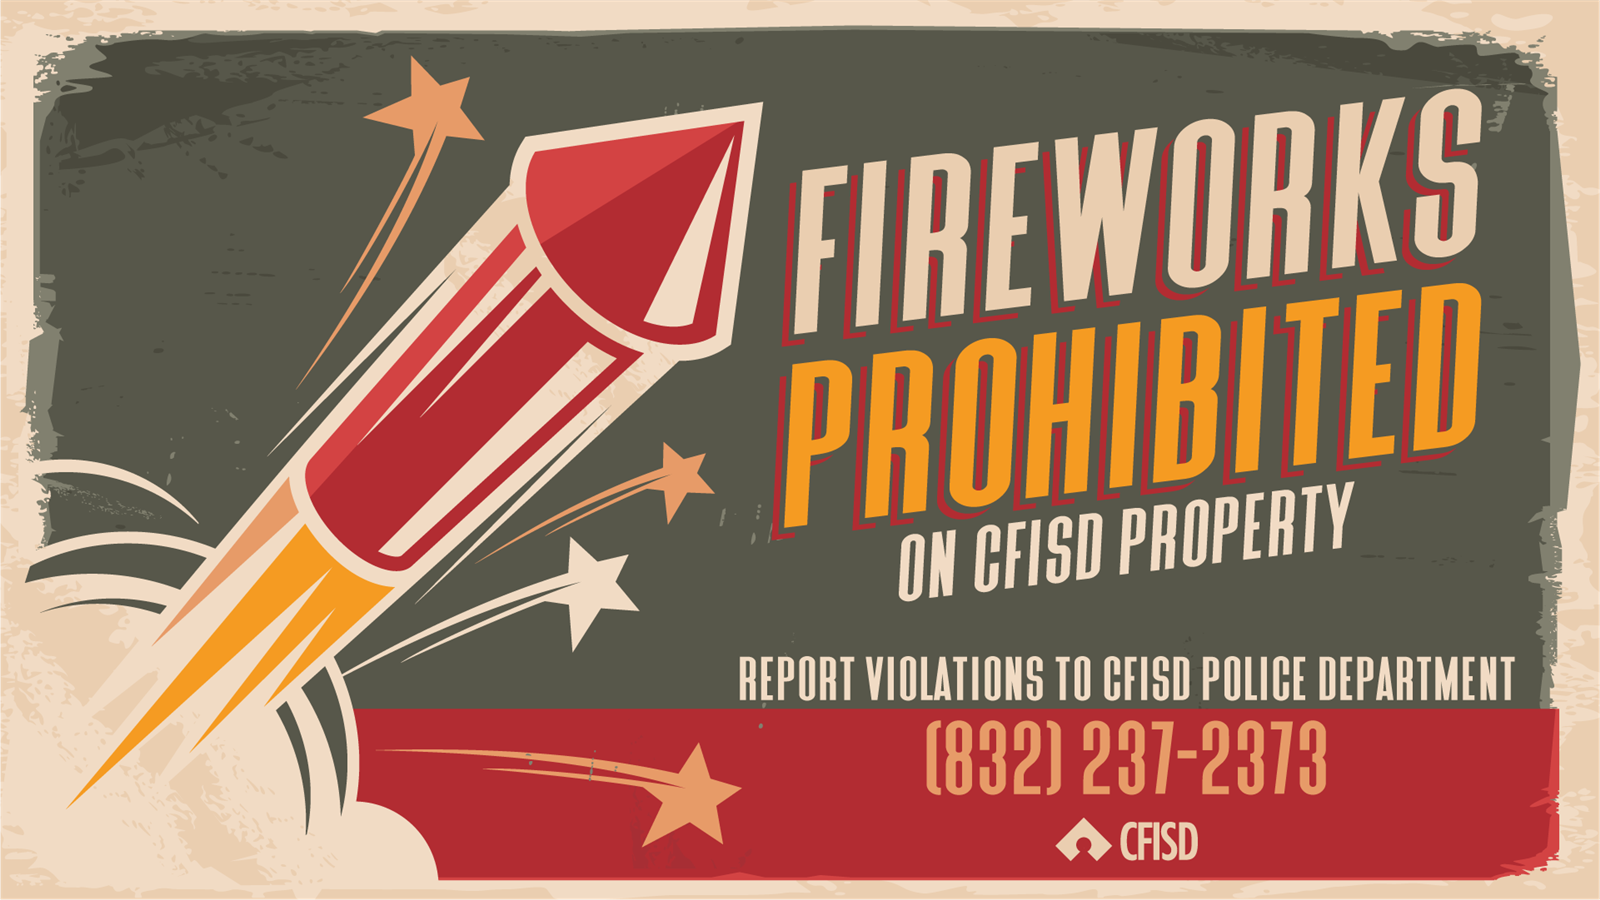  Fireworks prohibited on CFISD property.